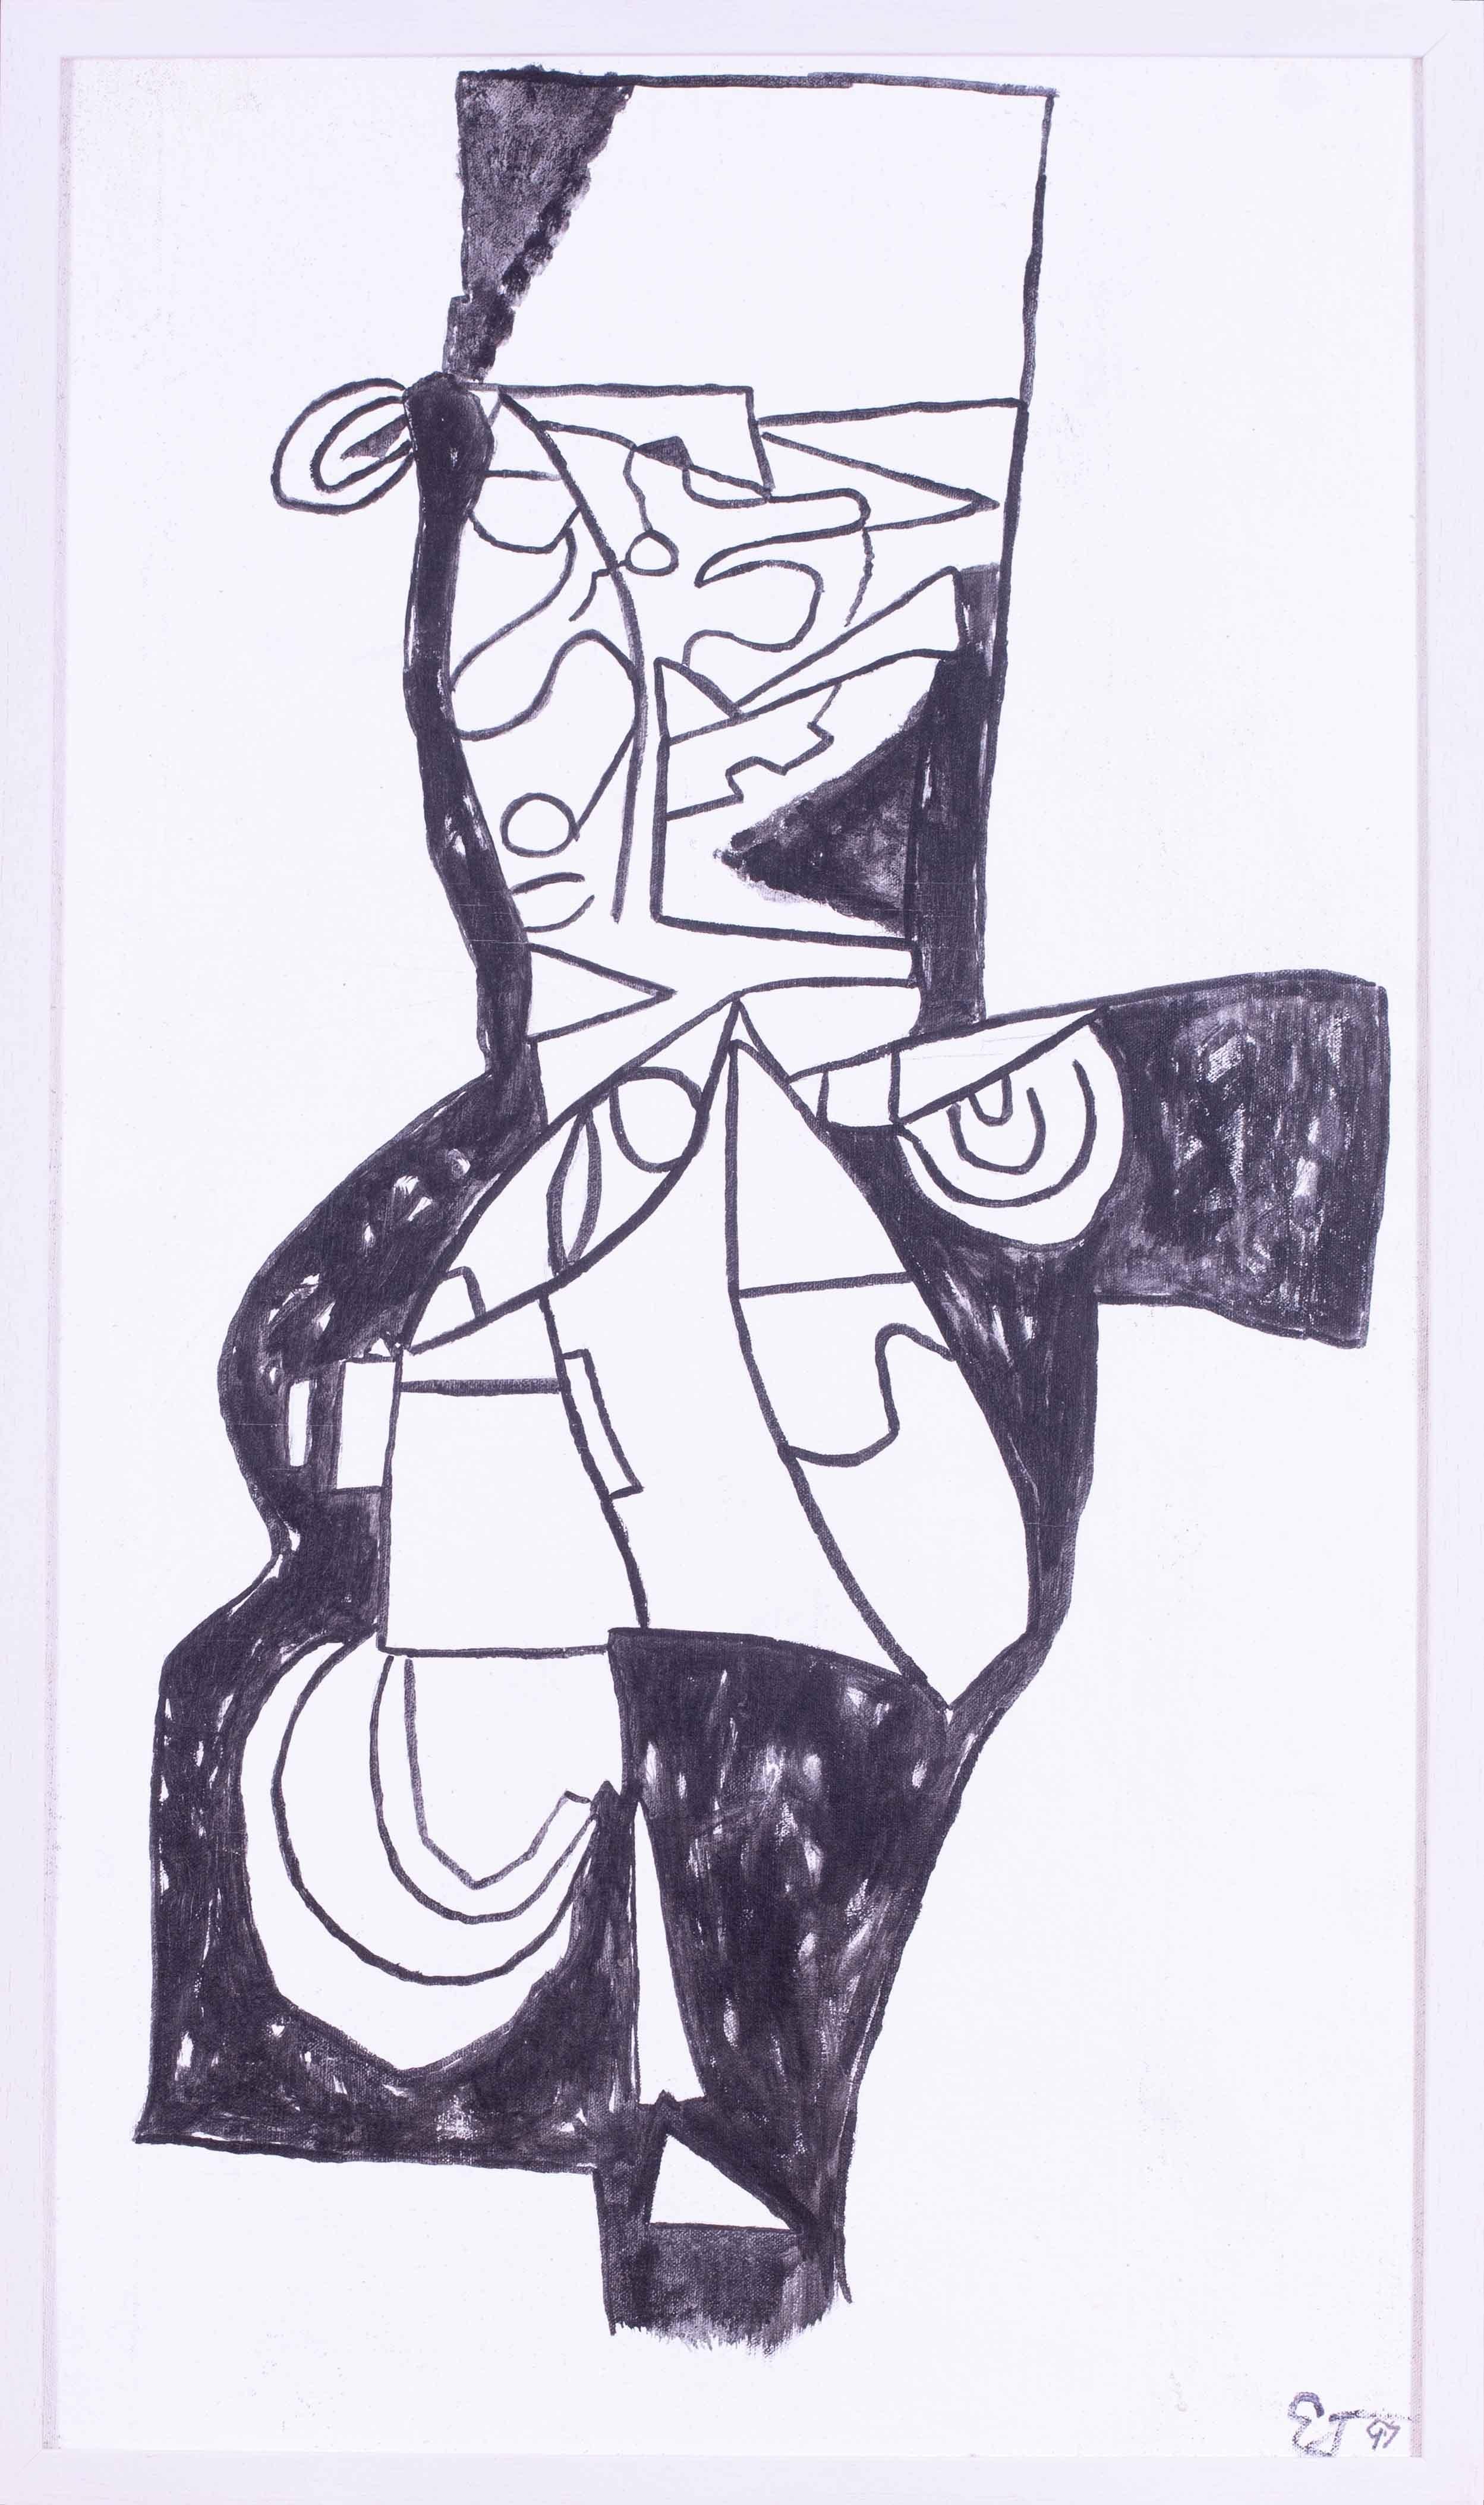 1997 Schwarz-Weiß-Abstraktes des modernen britischen Künstlers Ewart Johns.

Ewart Johns (Brite, 1923 - 2013)
Schwarz auf Weiß IV
Acryl auf Leinwand, aufgelegt auf Karton
Signiert mit Initialen und datiert 'EJ 97' (unten rechts) und rückseitig